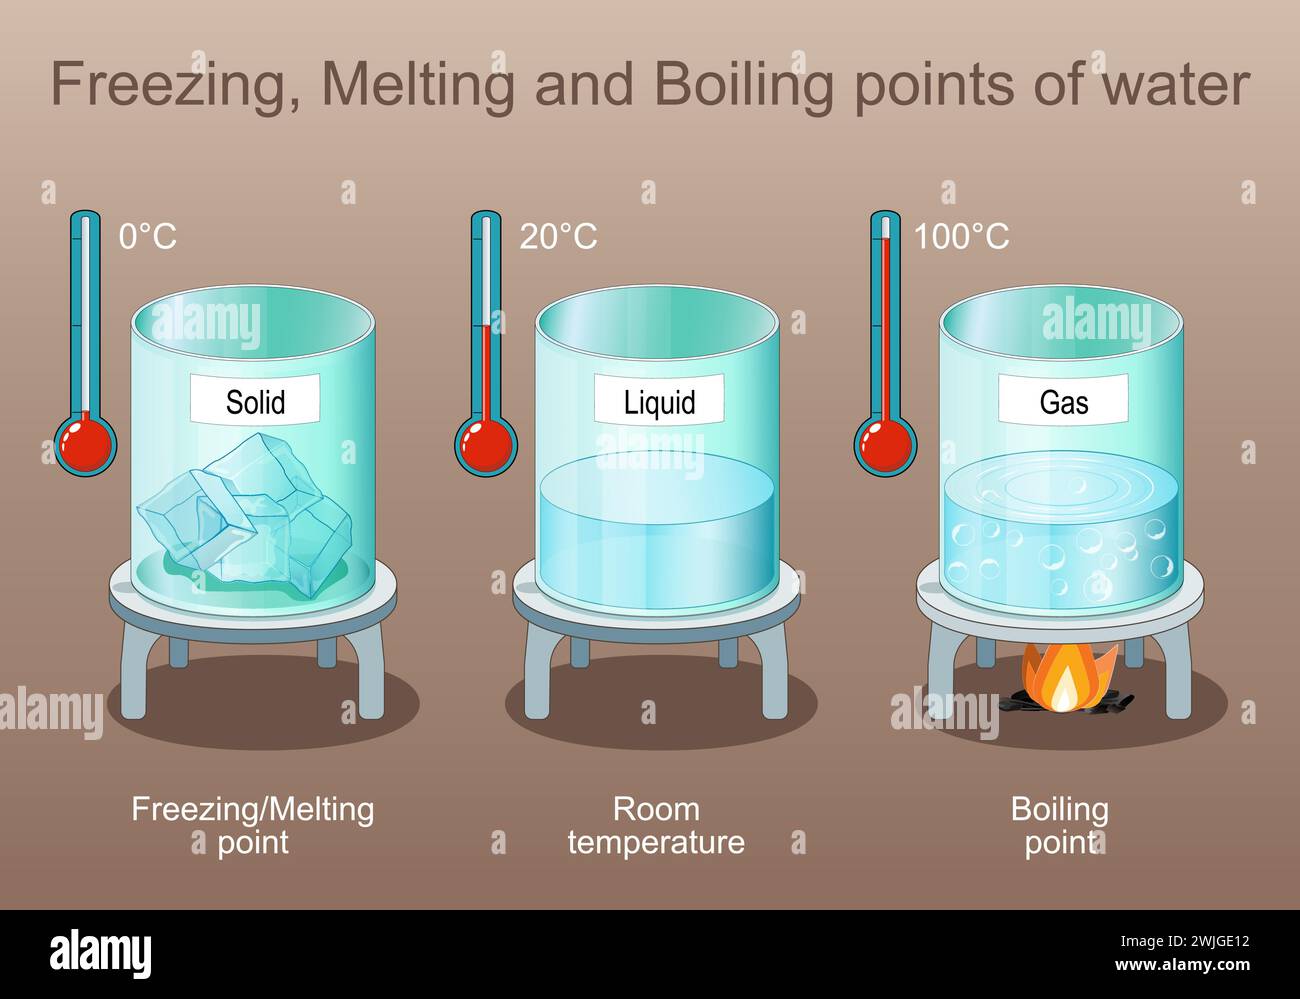 Points de congélation, de fusion et d'ébullition de l'eau. État de la matière. La vapeur est du gaz après ébullition, le liquide et le solide est de la glace. Affiche pour l'enseignement élémentaire Illustration de Vecteur